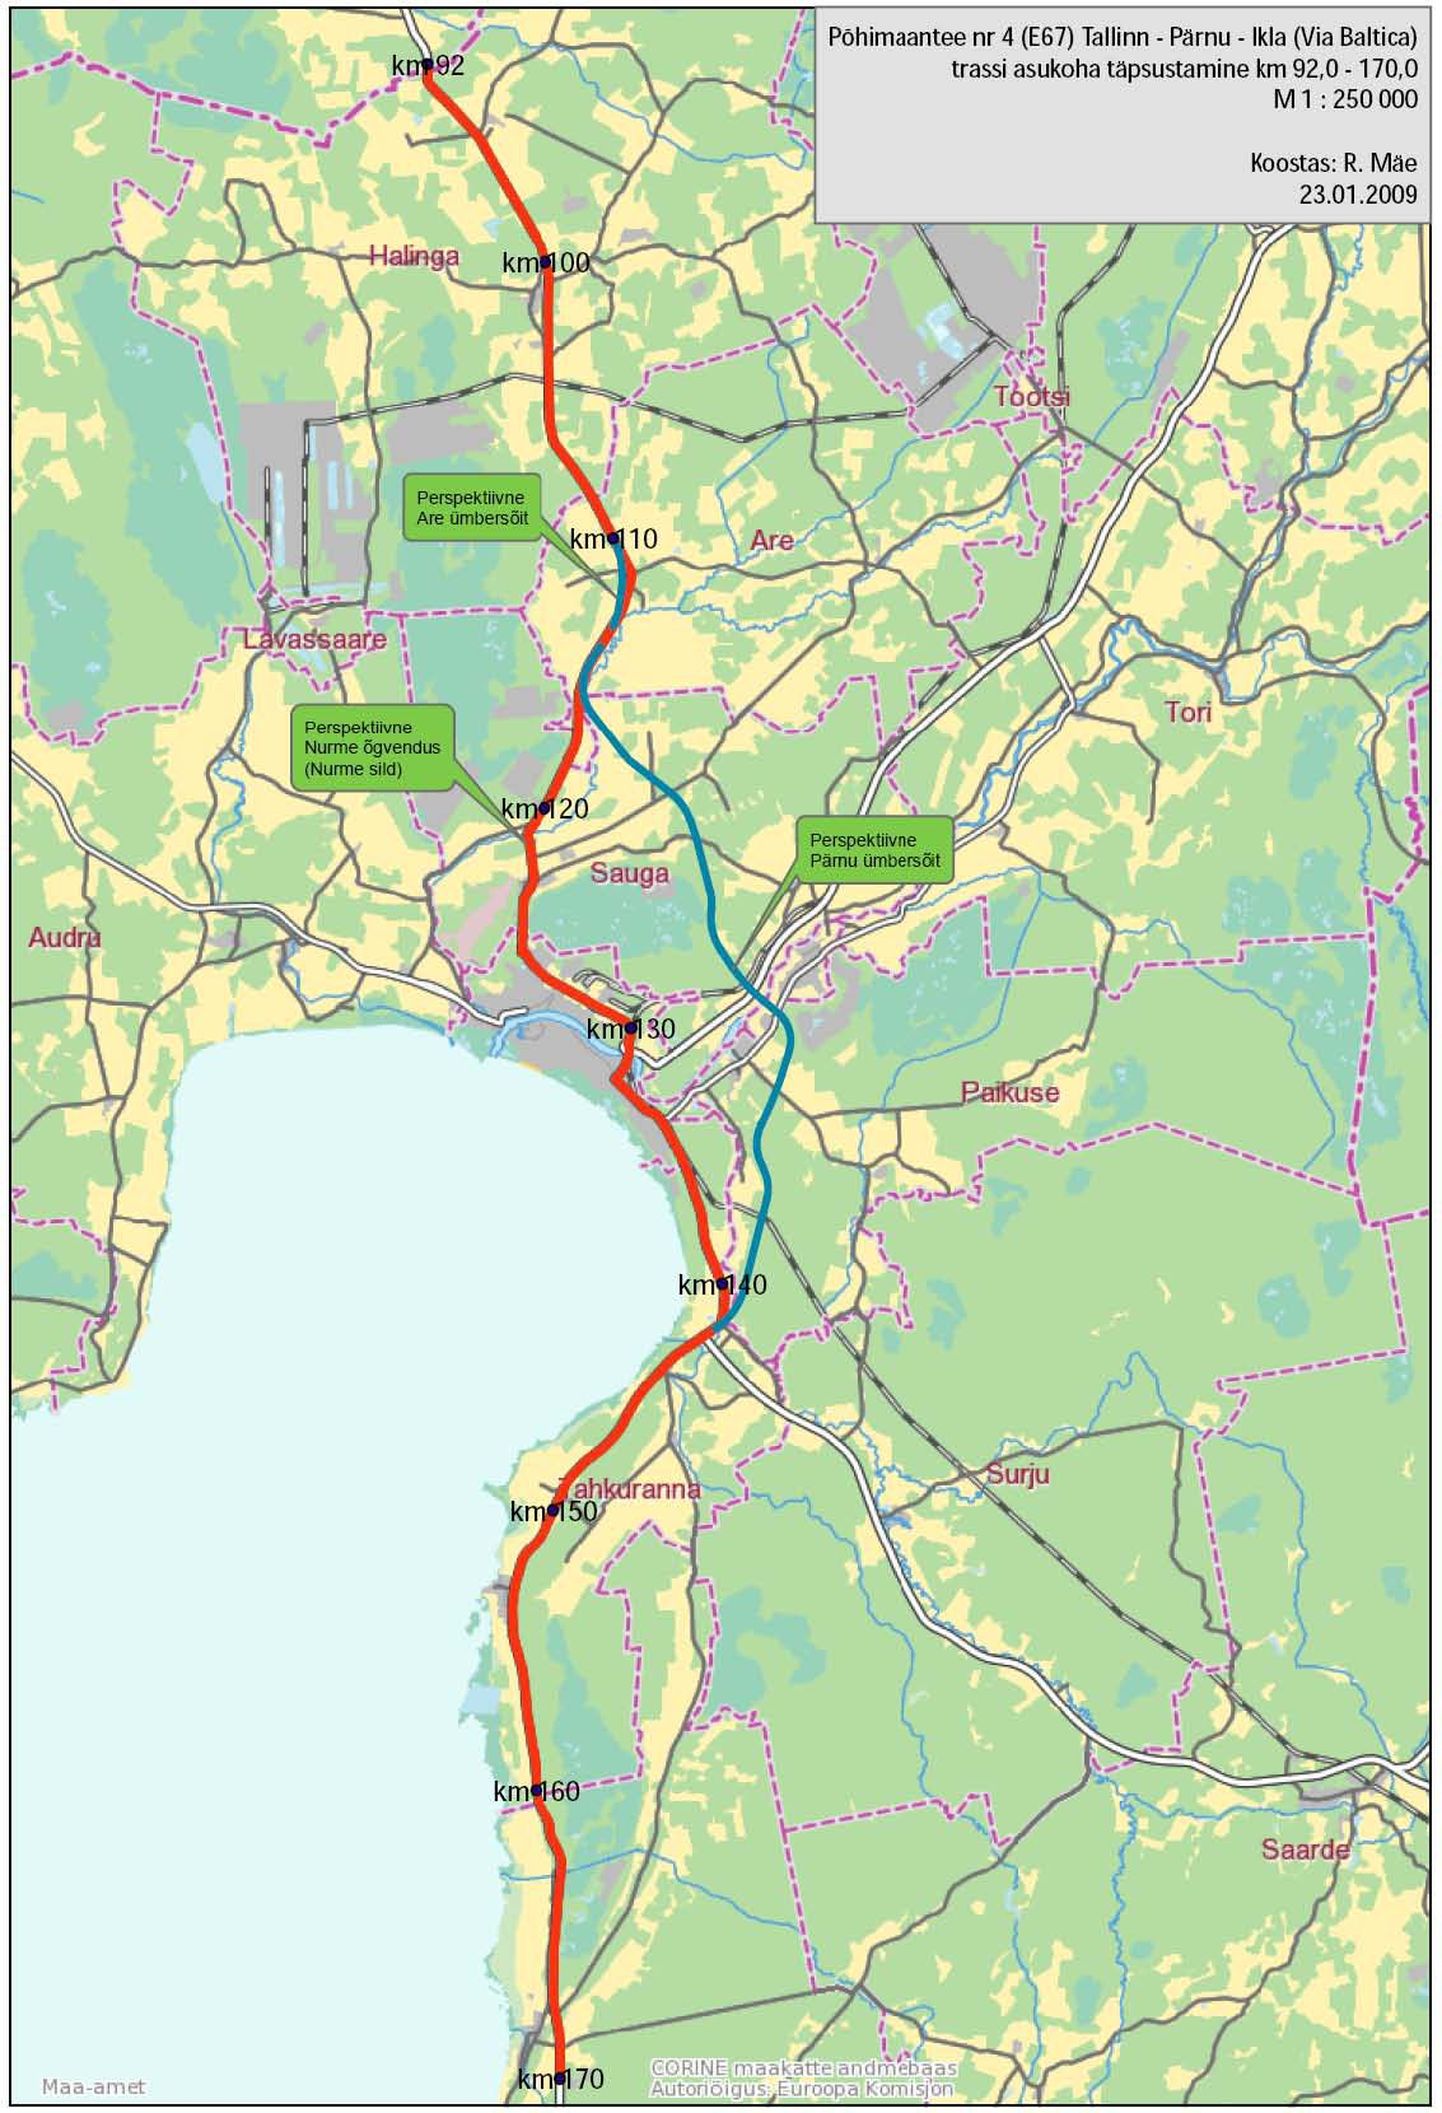 Teemaplaneeringuga hõlmatud Tallinna-Pärnu-Ikla maantee kilomeetritel 92-170 (punane joon) ning Pärnu maakonna planeeringu järgne perspektiivne Pärnu ümbersõit (sinine joon).